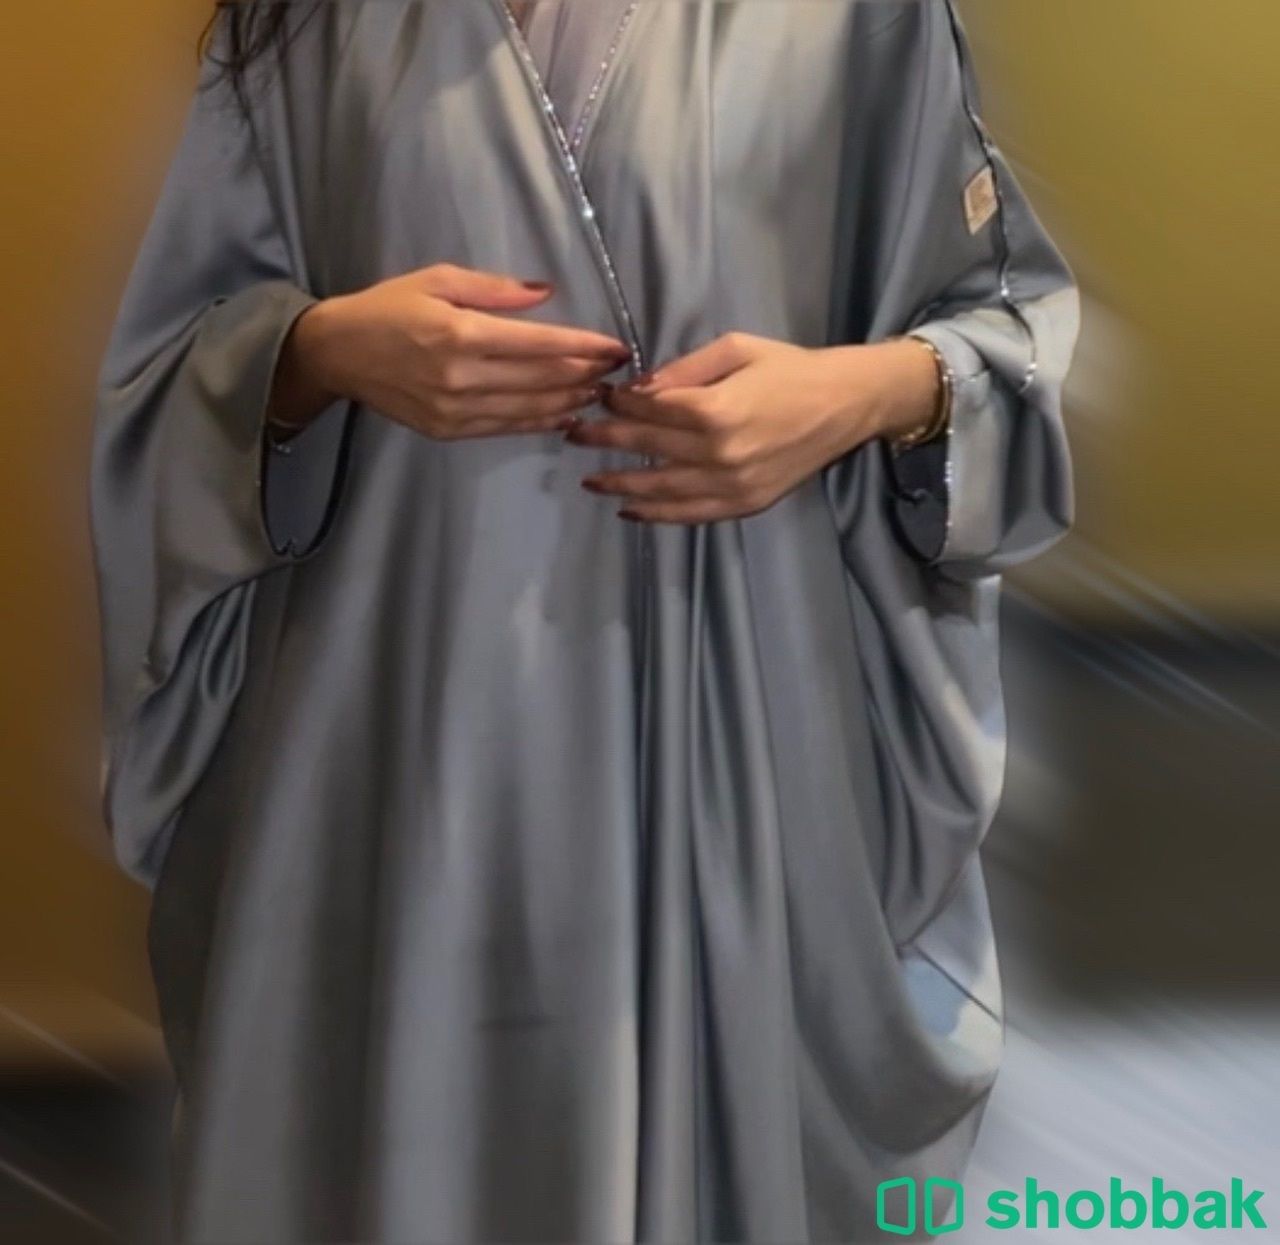 عباية انيقة و راقية و نظيفة جدا للبيع Shobbak Saudi Arabia